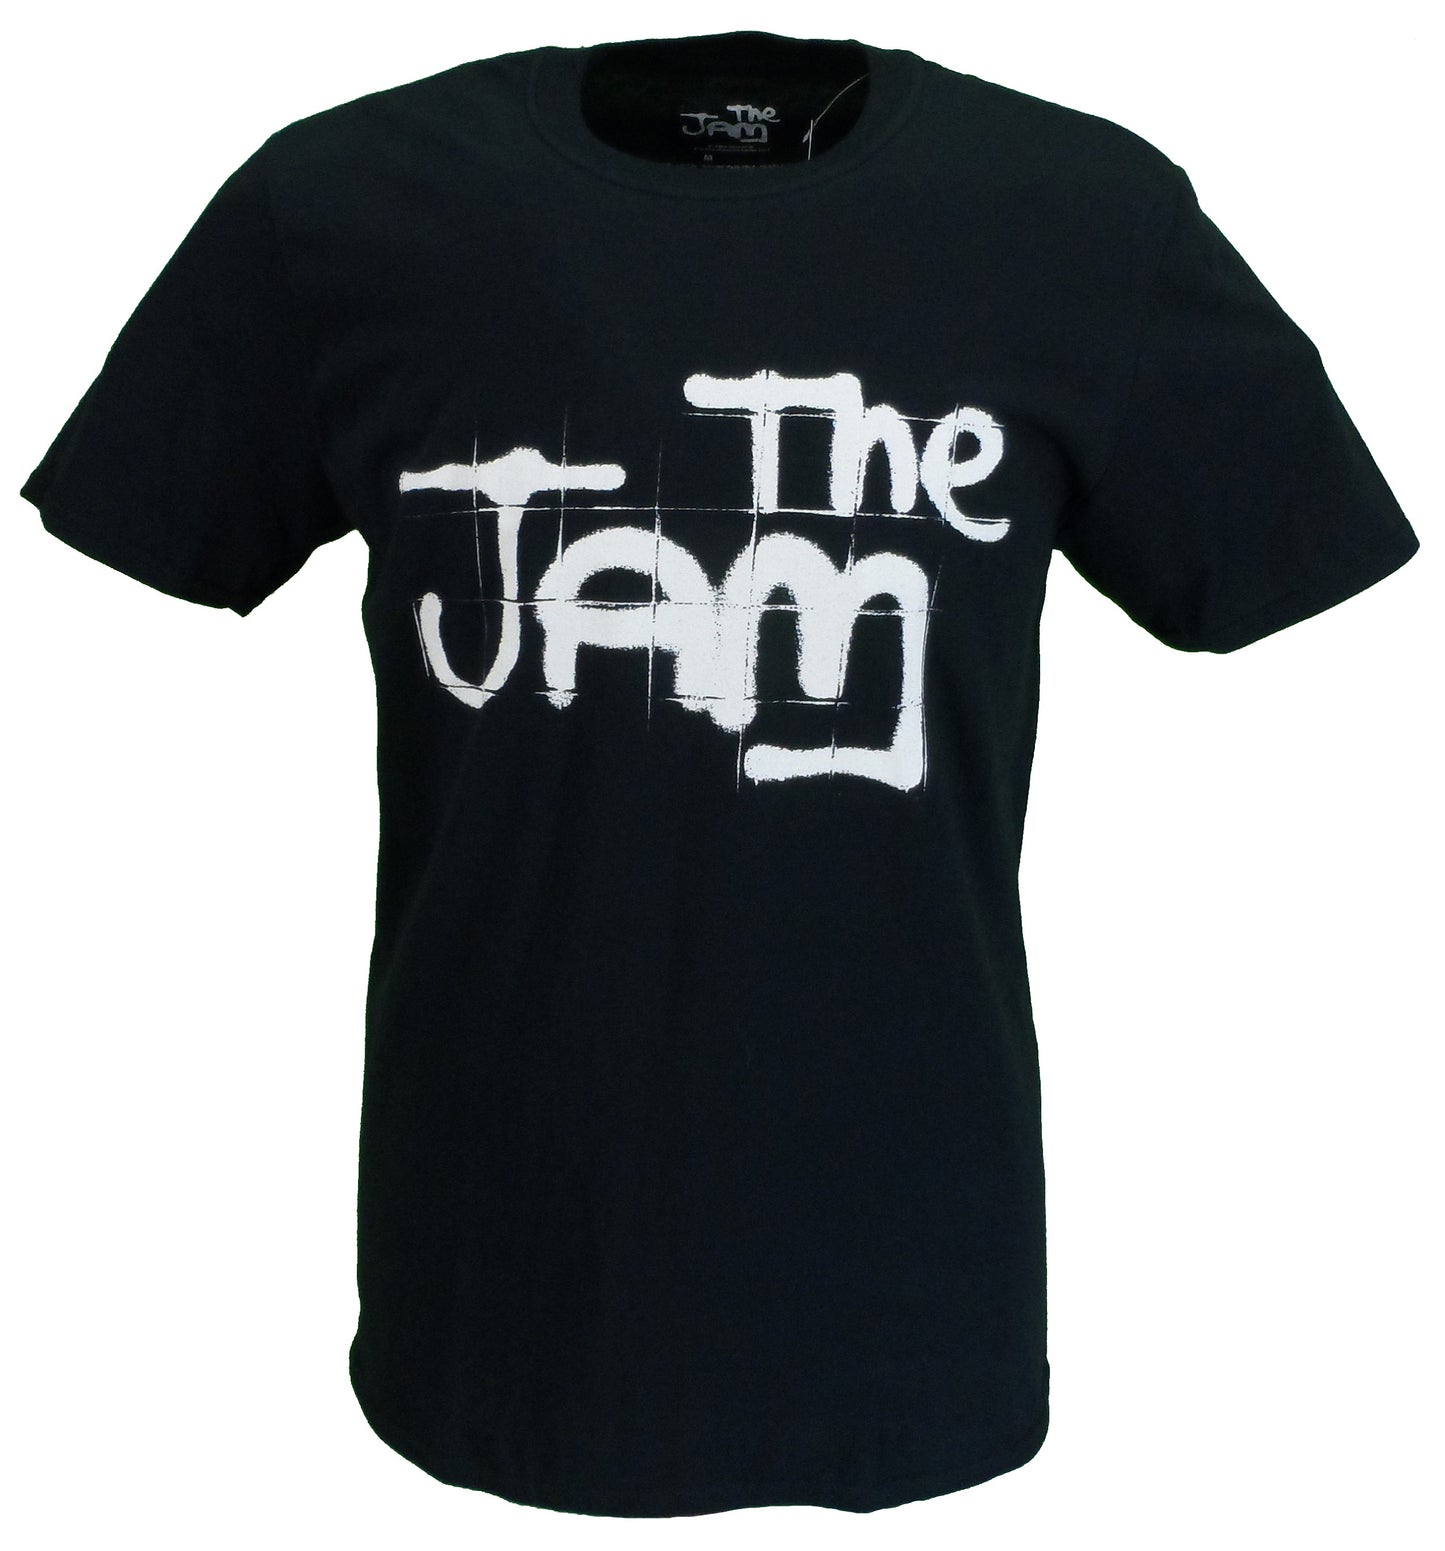 Camiseta oficial The Jam negra para hombre.